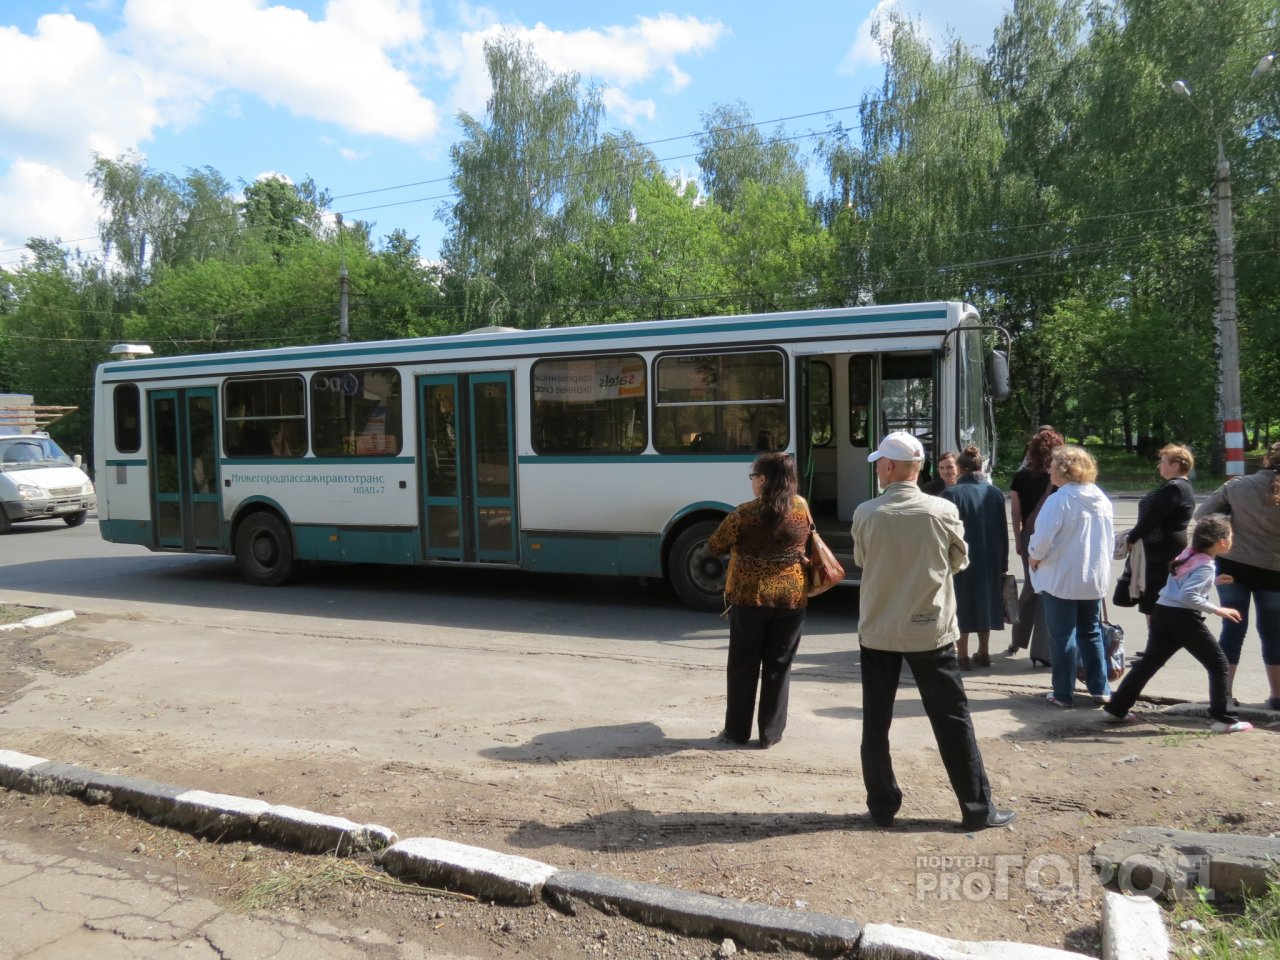 Нижегородская пенсионерка вывихнула плечо, упав в автобусе